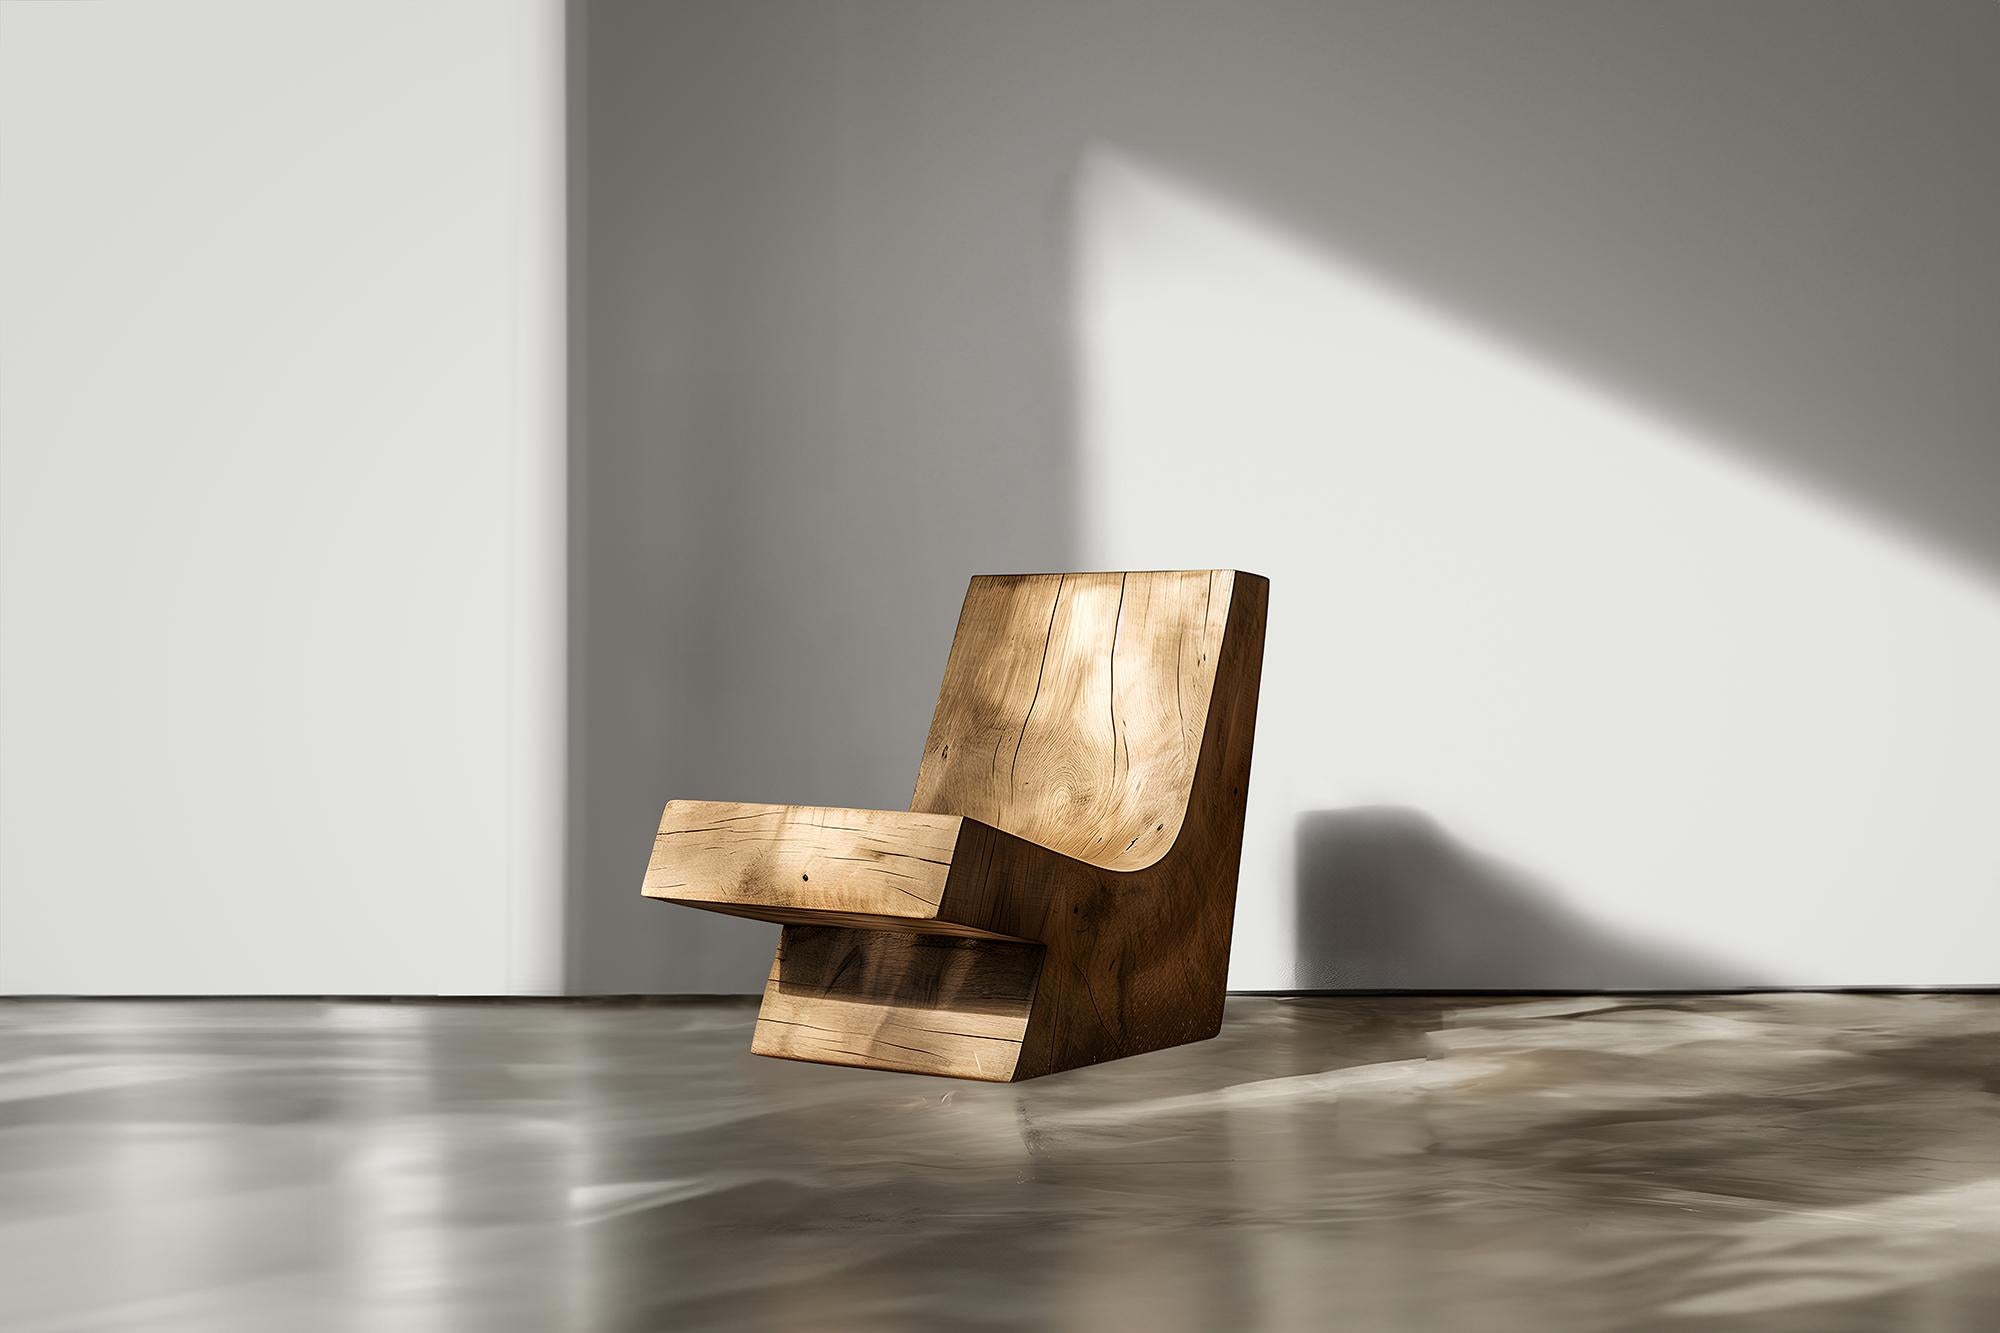 Chaise de lobby contemporaine Sleek Design Muted by Joel Escalona No03---

Plongez dans le monde de l'élégance discrète et des prouesses architecturales avec la Collection Muted Lounge Chairs de NONO. Cette série, méticuleusement conçue par Joel